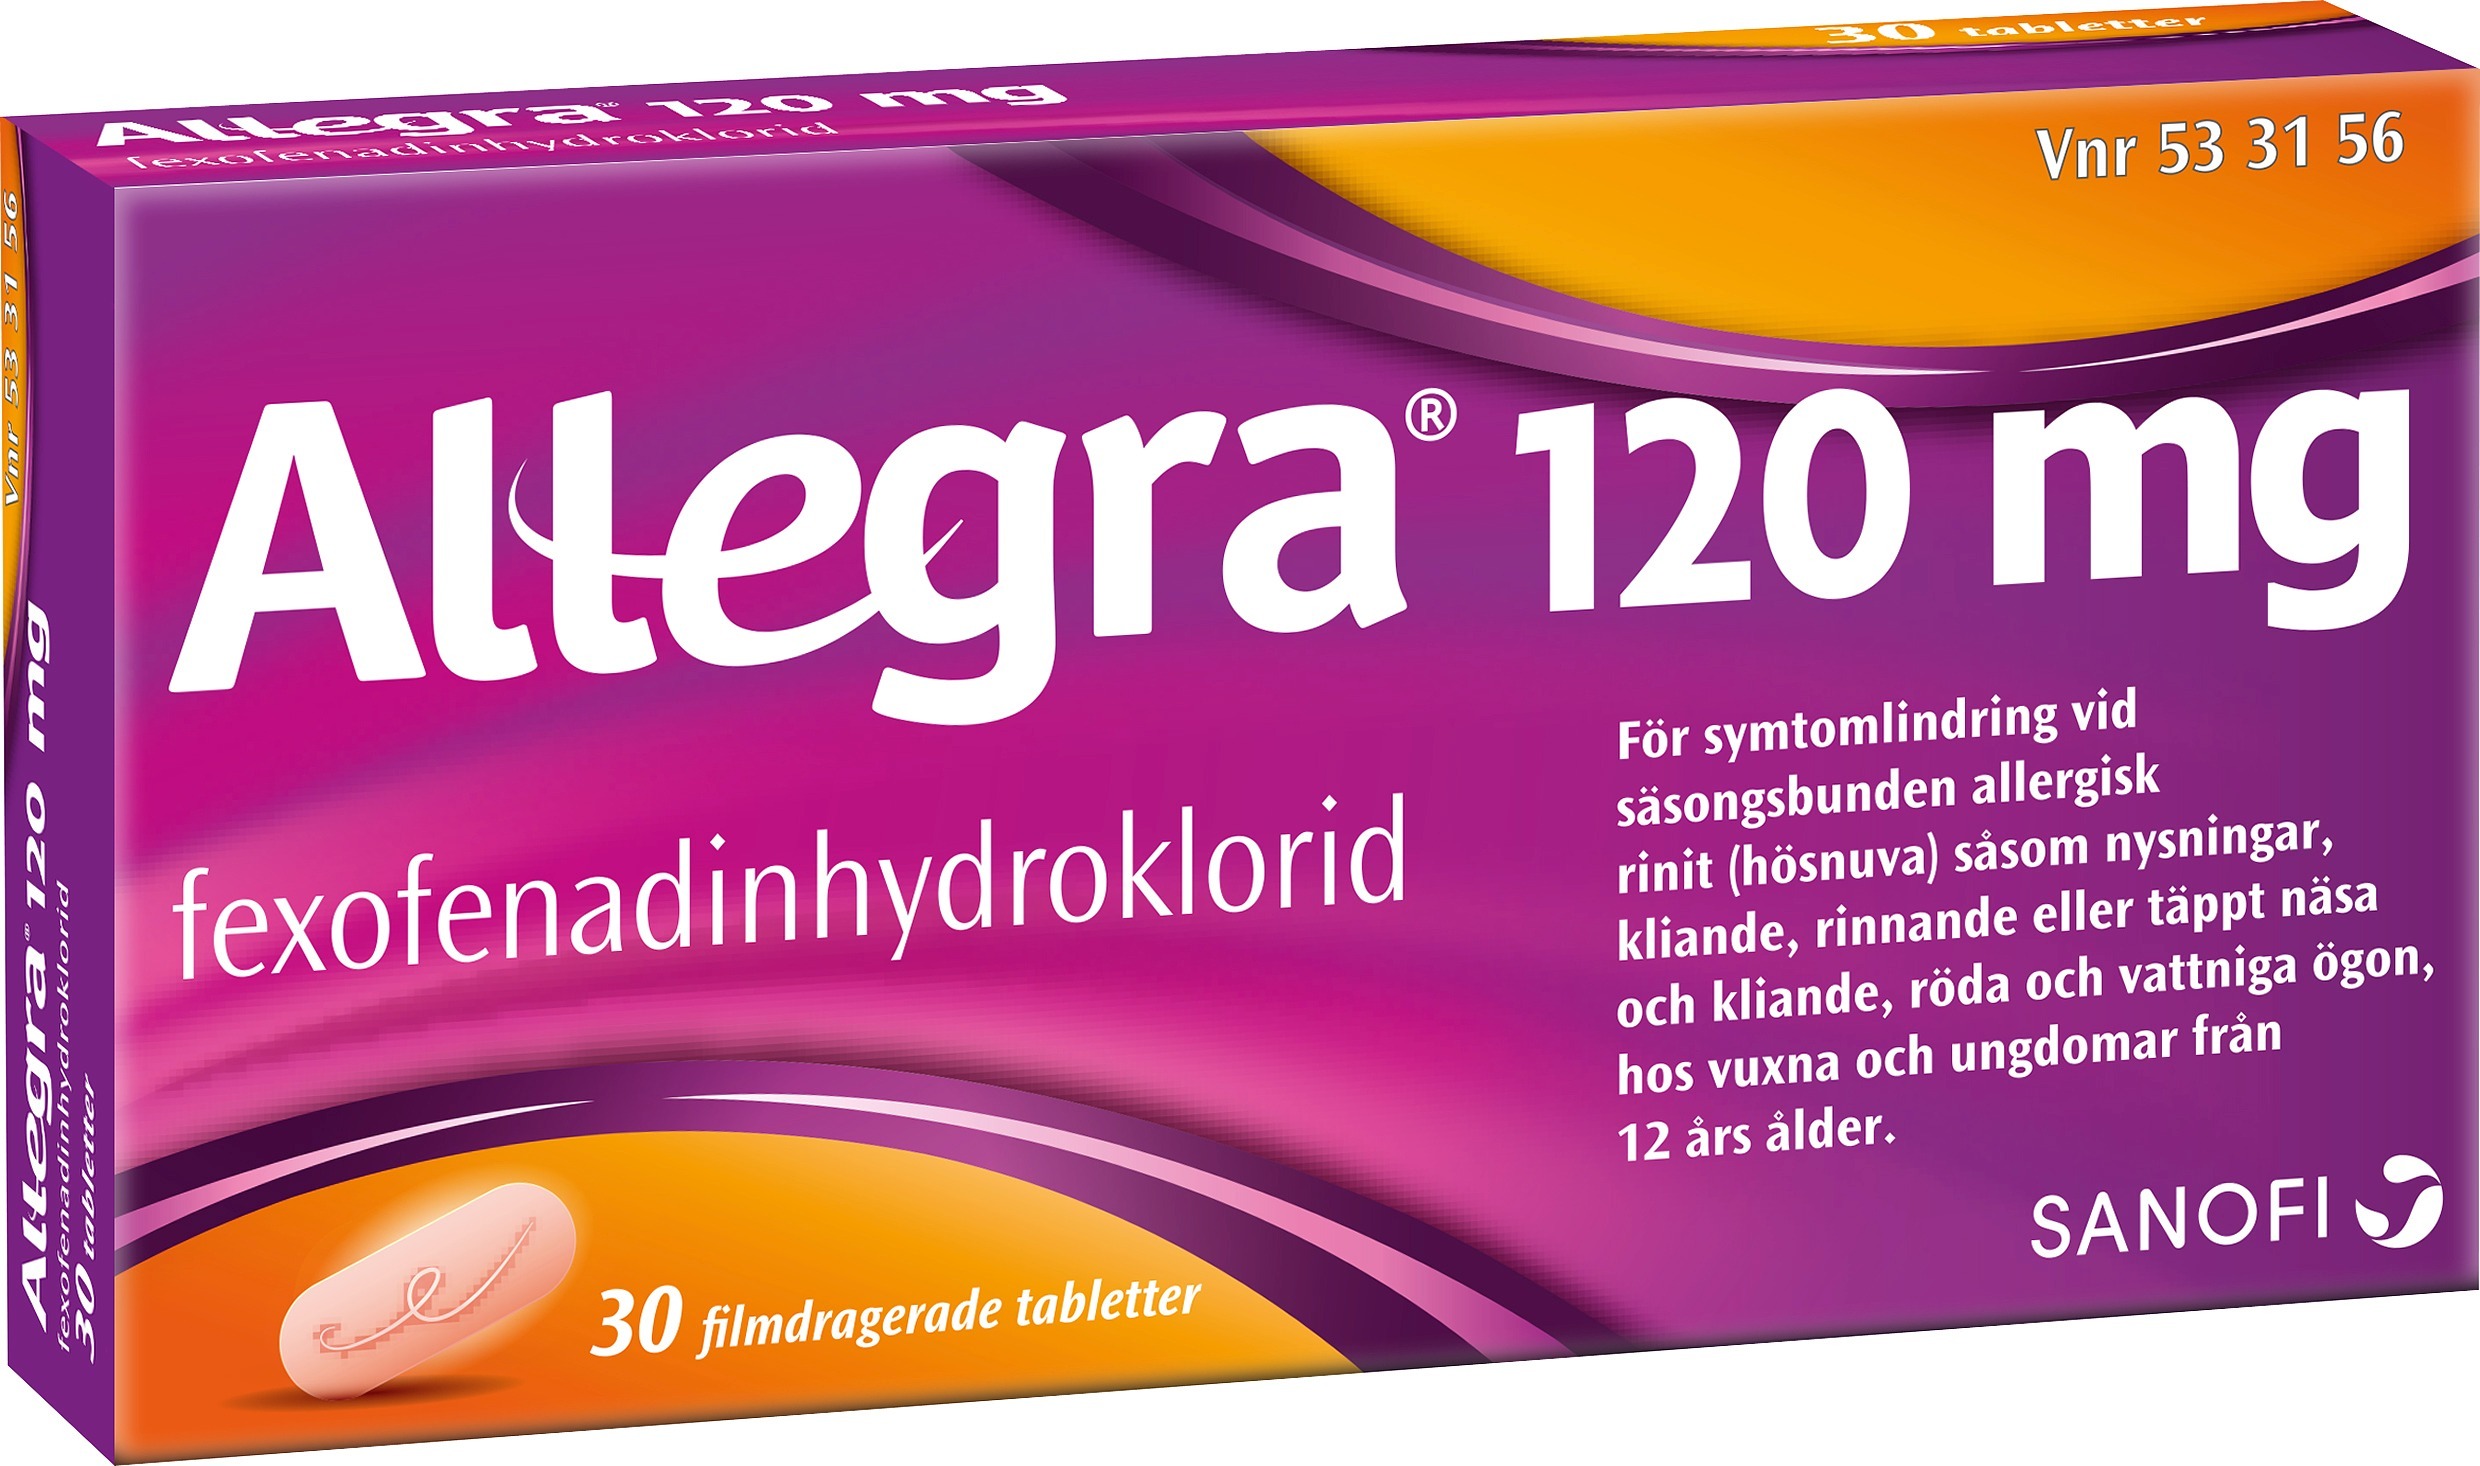 Allegra tablett 120 mg st - Hjärtat